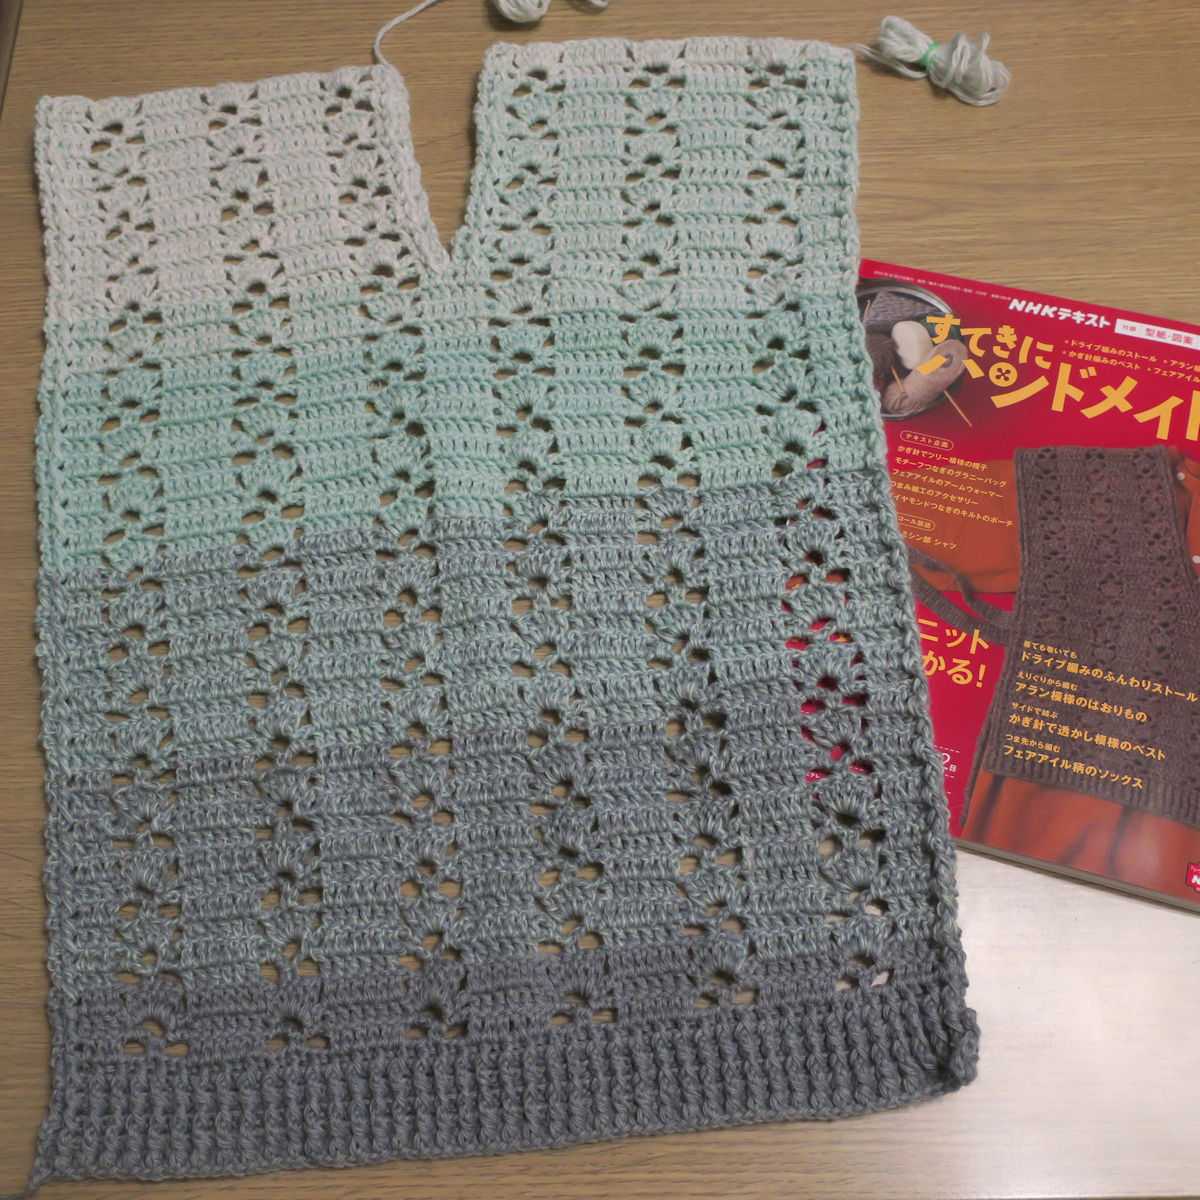 優れた品質 ハンドメイド かぎ編み コットンベスト 手編み